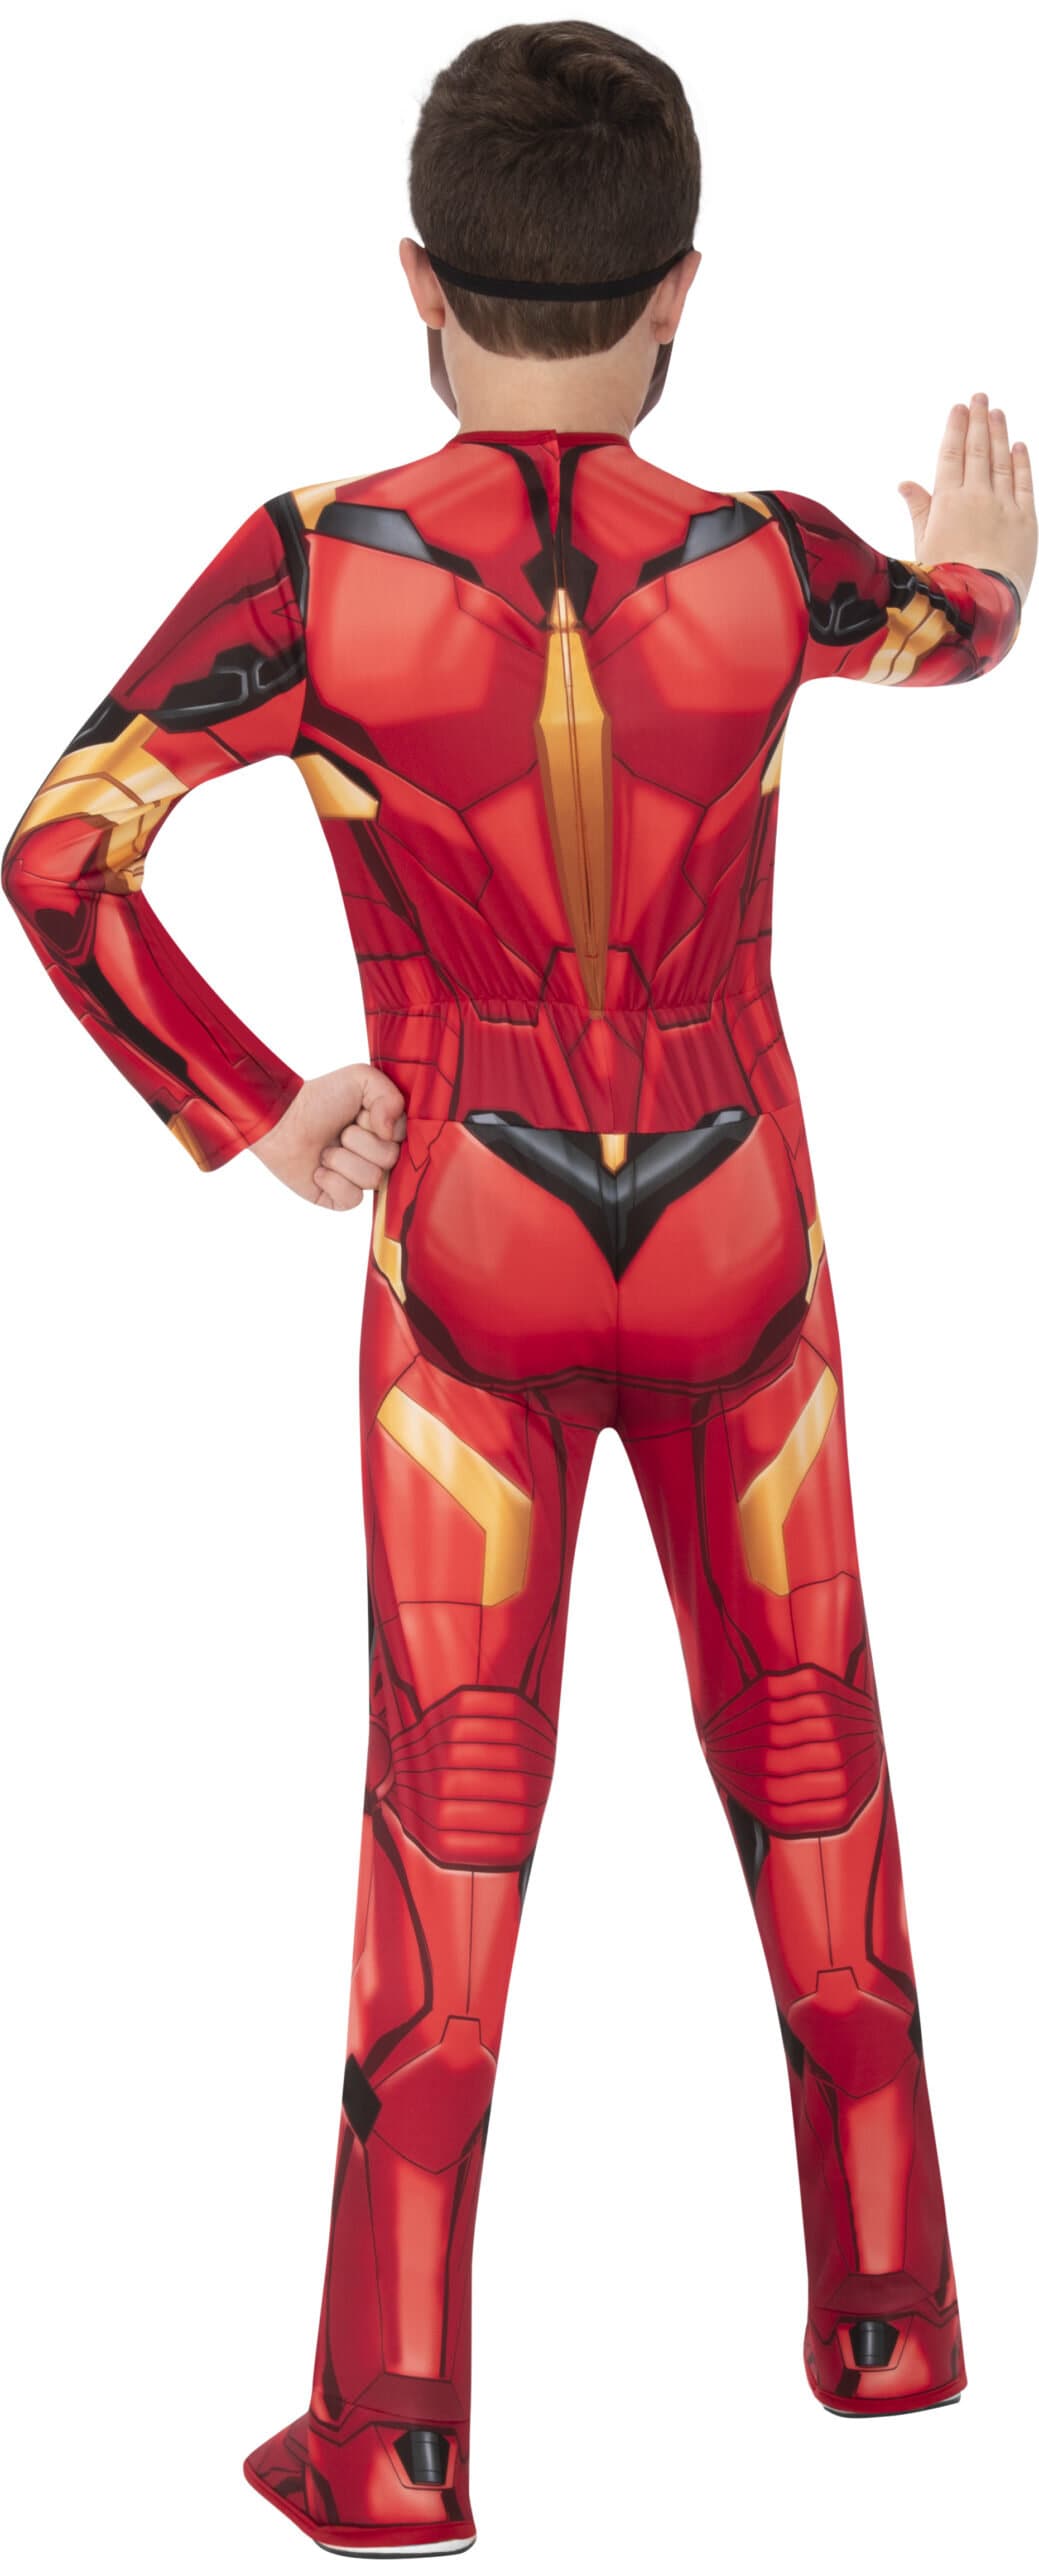 Marvel Avengers - Iron Man kostume 9-10 år